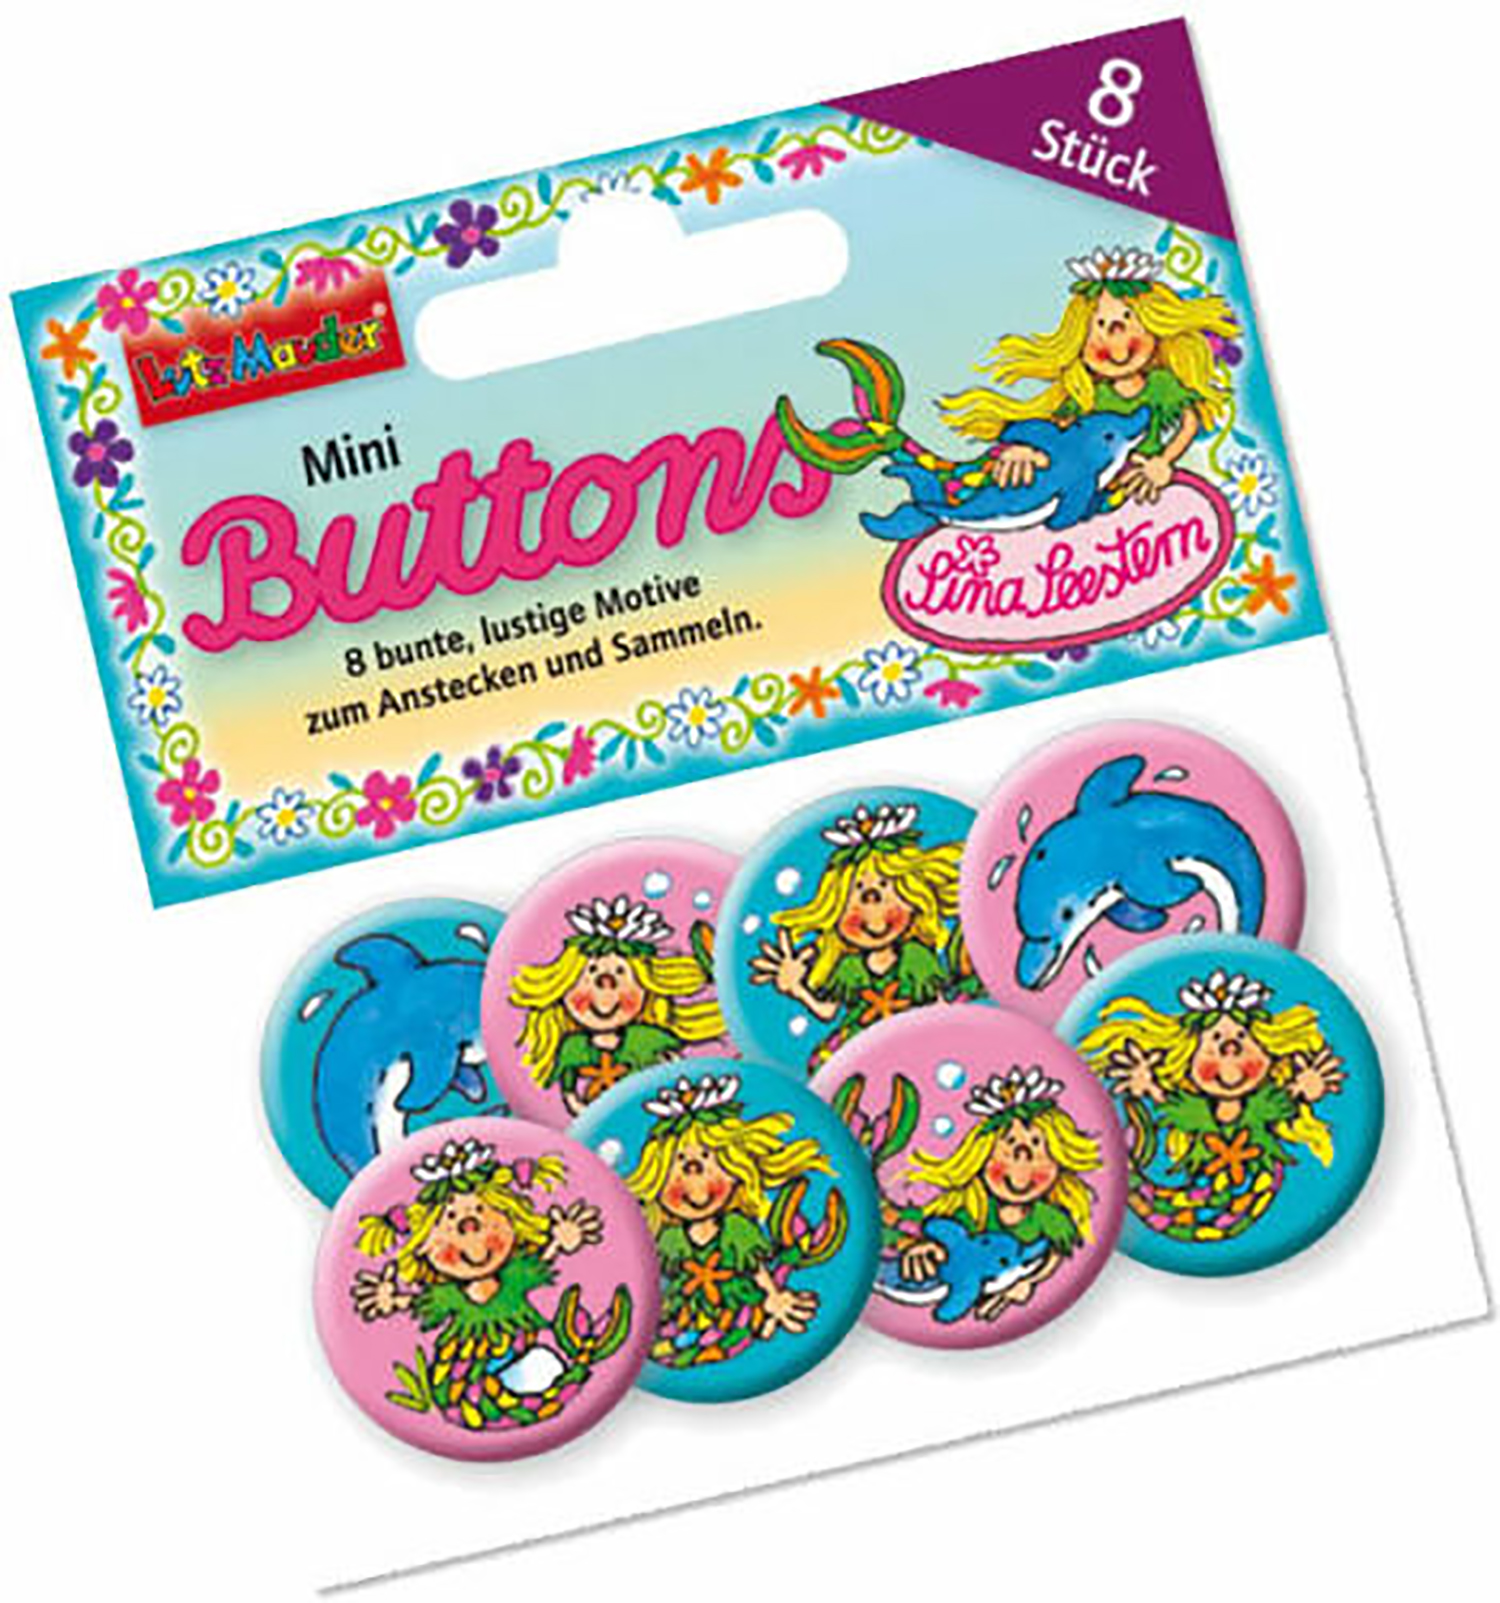 8 Mini Buttons Sina Seestern